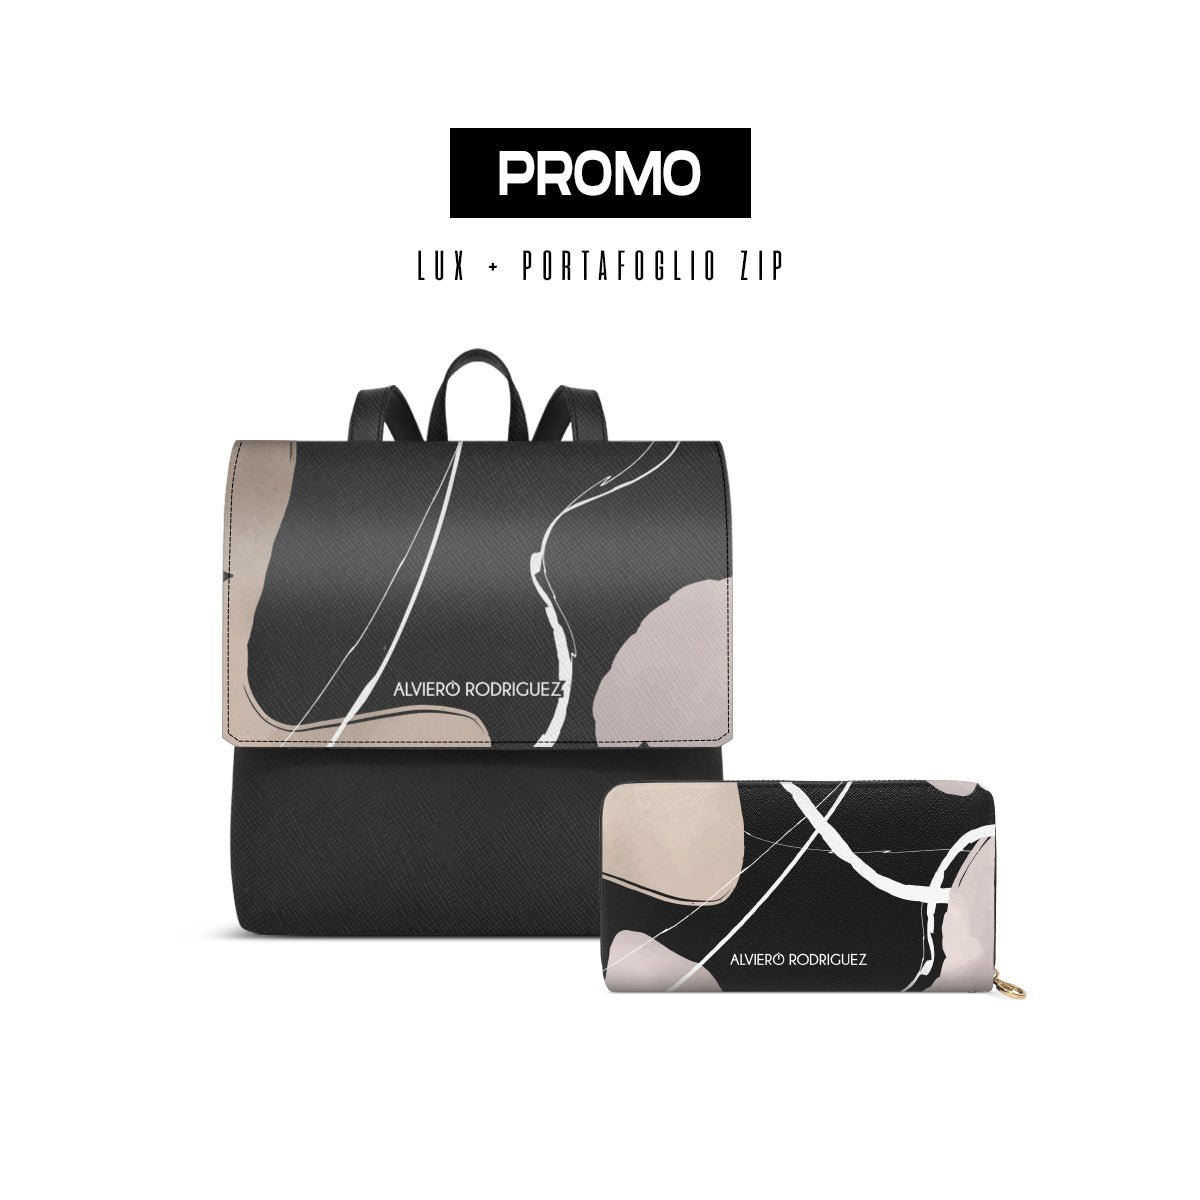 Promo Zainetto Lux + Portafoglio Zip Fashion Ink